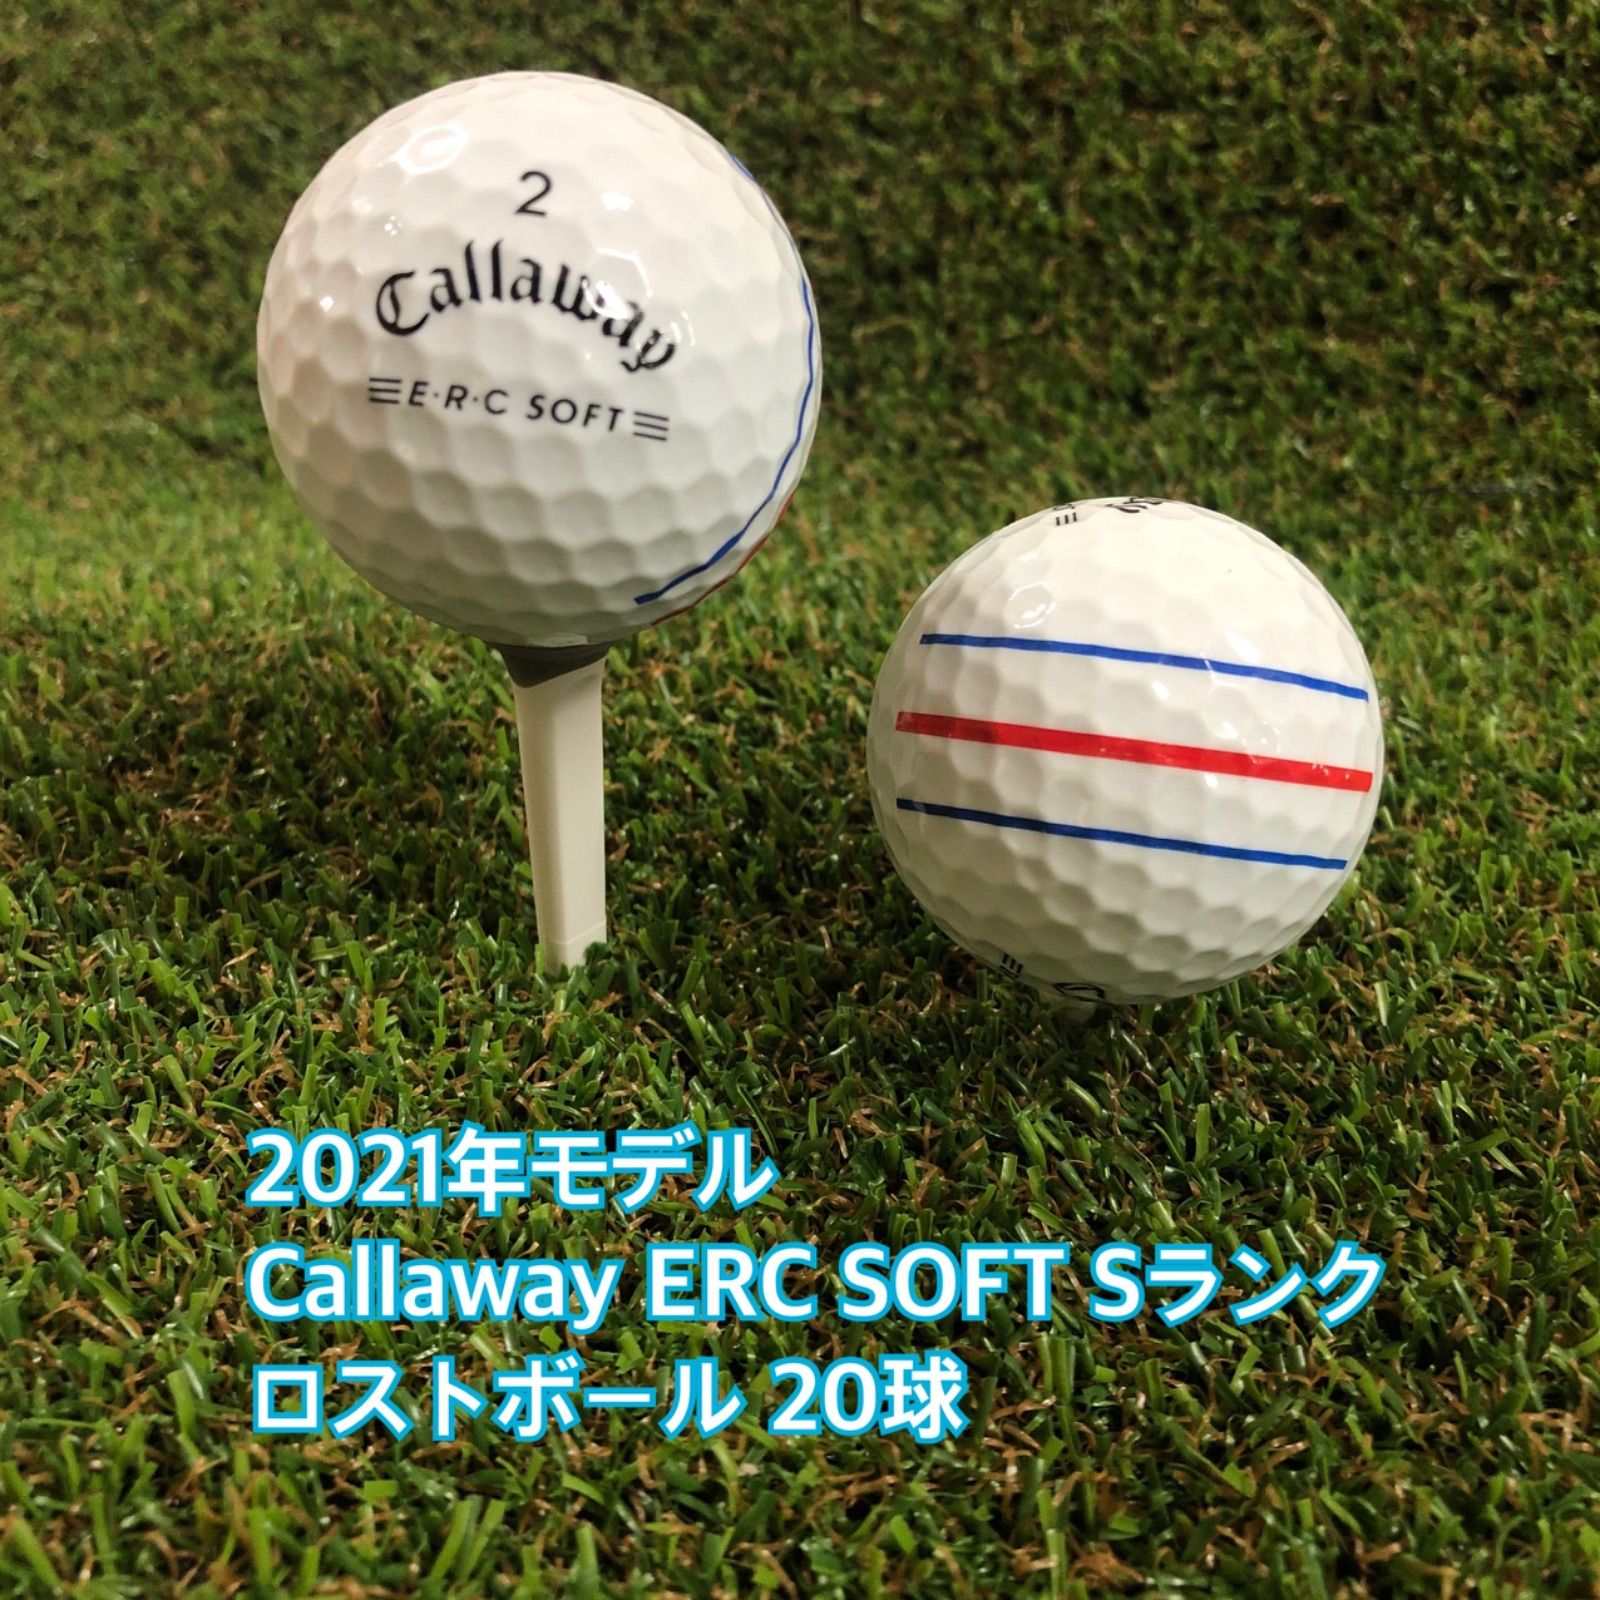 バリよかロストボールSHOP 2021年モデル Callaway ERC SOFT Sランク